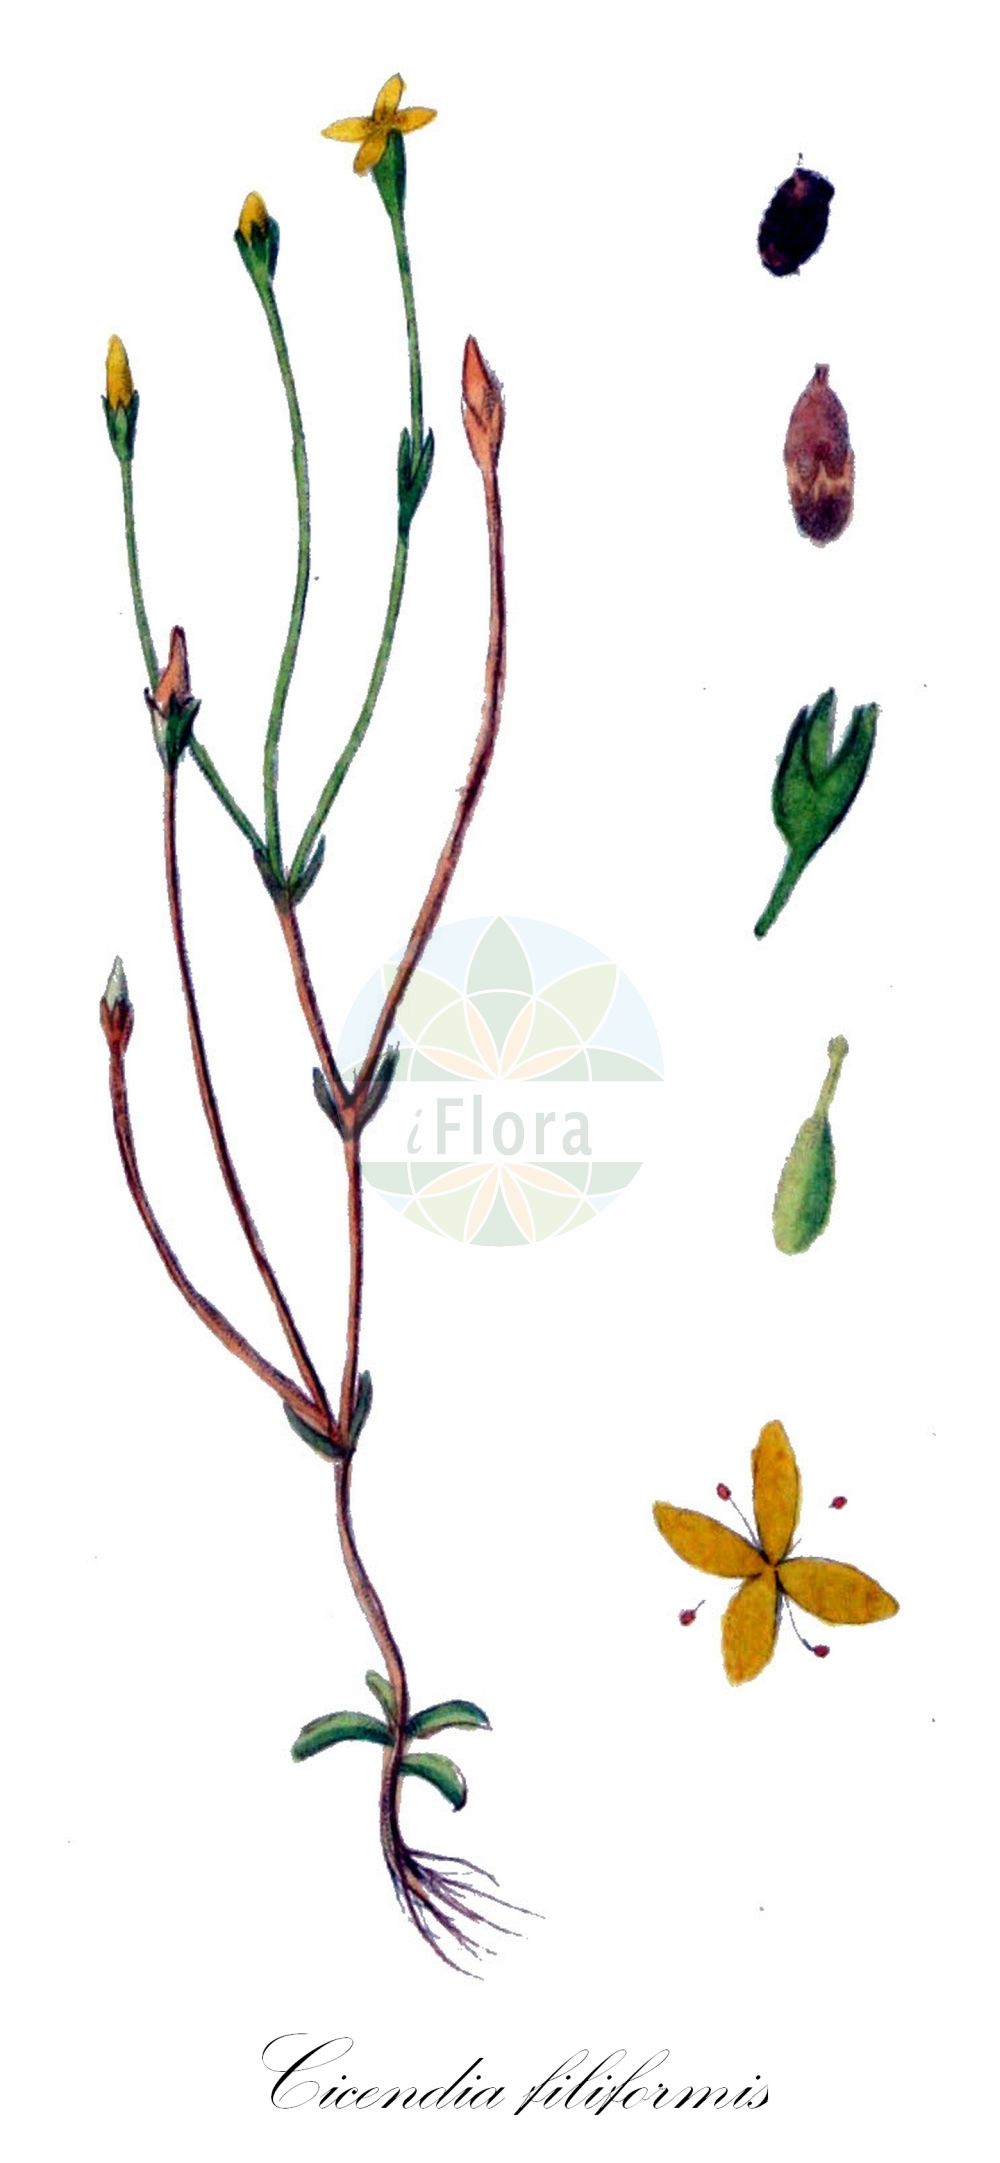 Historische Abbildung von Cicendia filiformis (Schmalblättriger Fadenenzian - Slender Cicendia). Das Bild zeigt Blatt, Bluete, Frucht und Same. ---- Historical Drawing of Cicendia filiformis (Schmalblättriger Fadenenzian - Slender Cicendia). The image is showing leaf, flower, fruit and seed.(Cicendia filiformis,Schmalblättriger Fadenenzian,Slender Cicendia,Cicendia filiformis,Exacum filiforme,Gentiana filiformis,Microcala filiformis,Schmalblaettriger Fadenenzian,Fadenenzian,Slender Cicendia,Guernsey Centaury,Yellow Centaury,Cicendia,Fadenenzian,Cicendia,Gentianaceae,Enziangewächse,Gentian family,Blatt,Bluete,Frucht,Same,leaf,flower,fruit,seed,Kops (1800-1934))